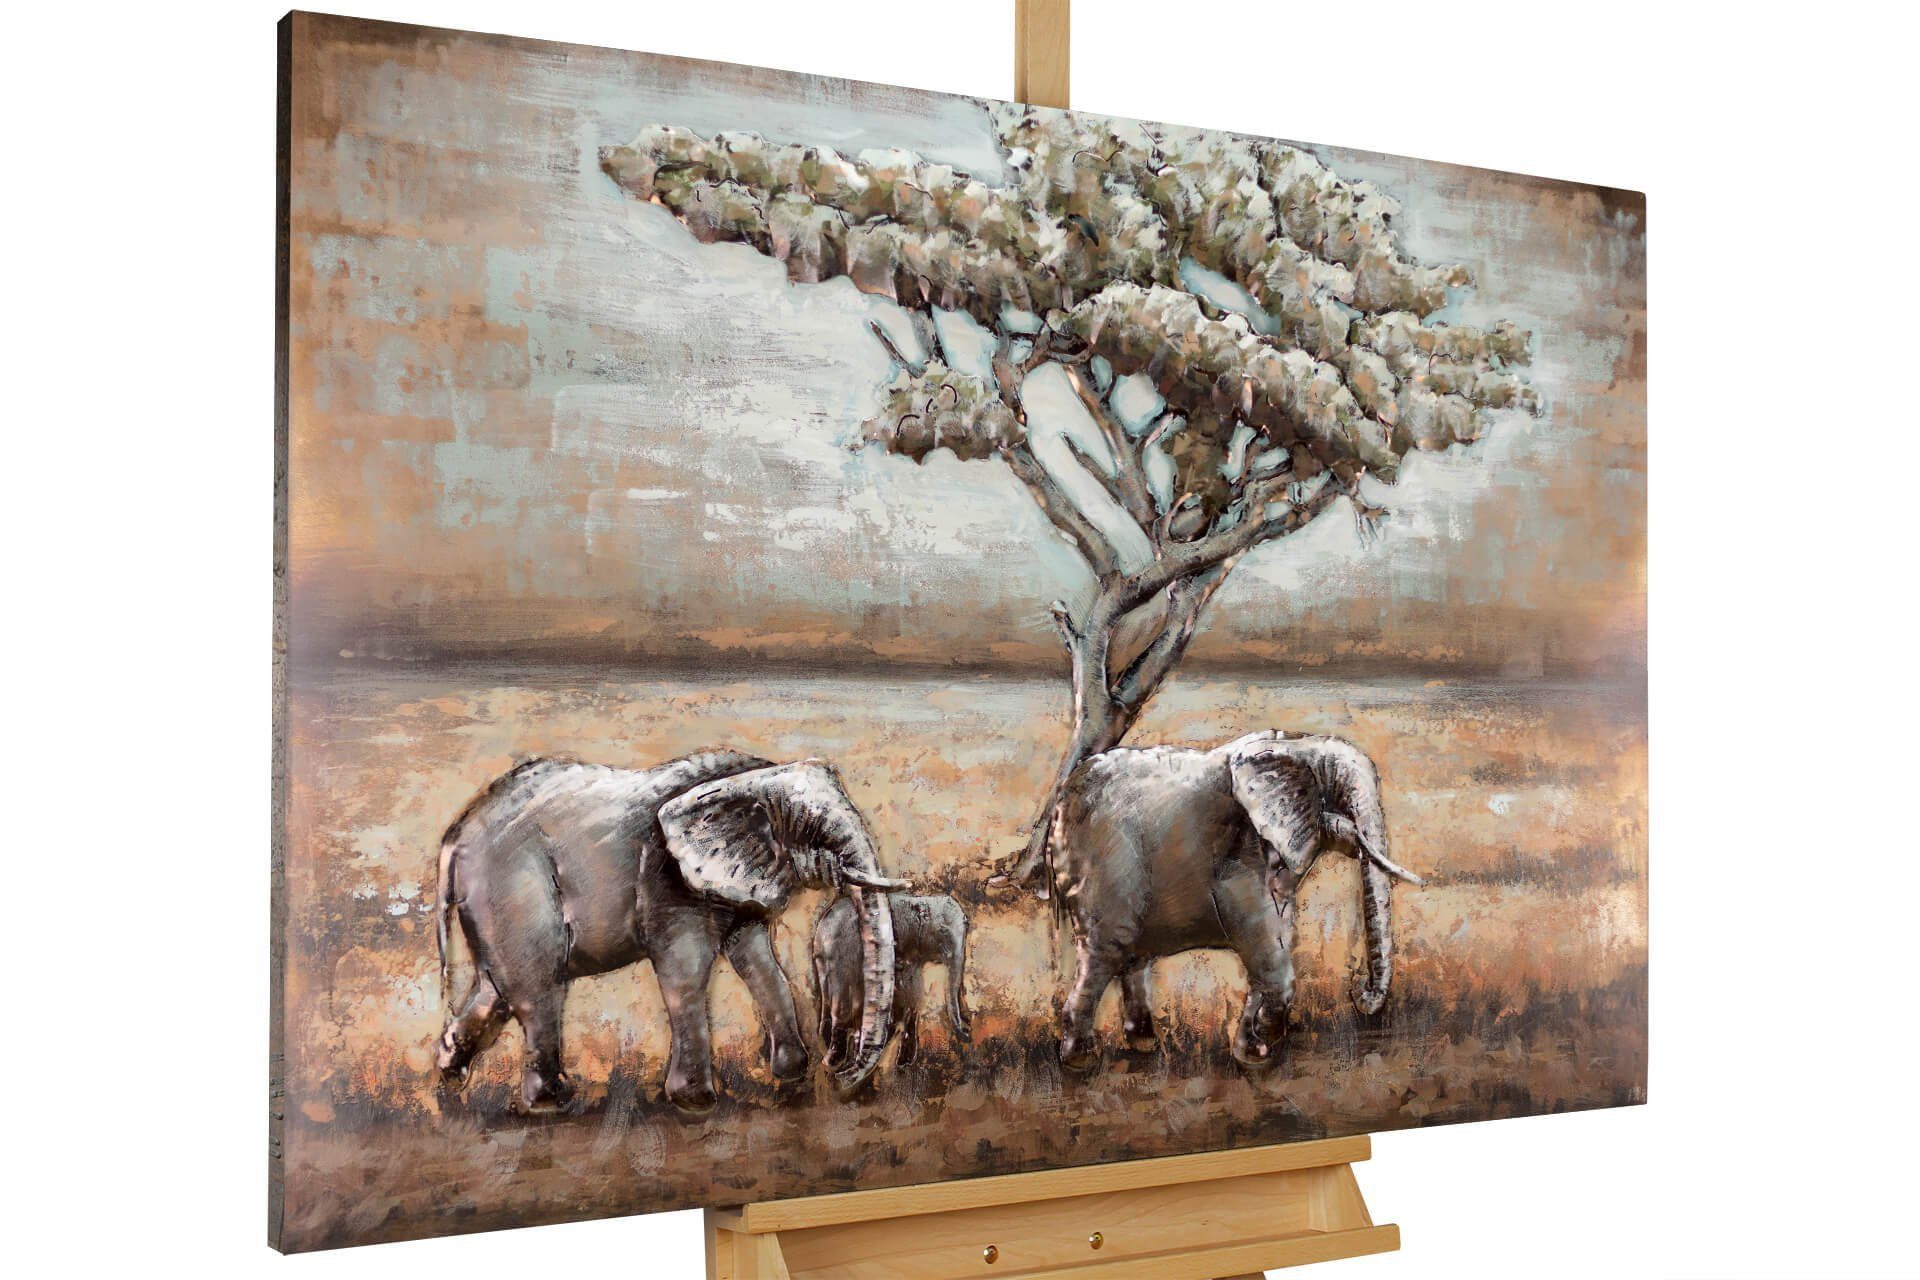 cm, handgefertiges in Elefanten KUNSTLOFT 120x80 3D Afrika Wandrelief Metallbild